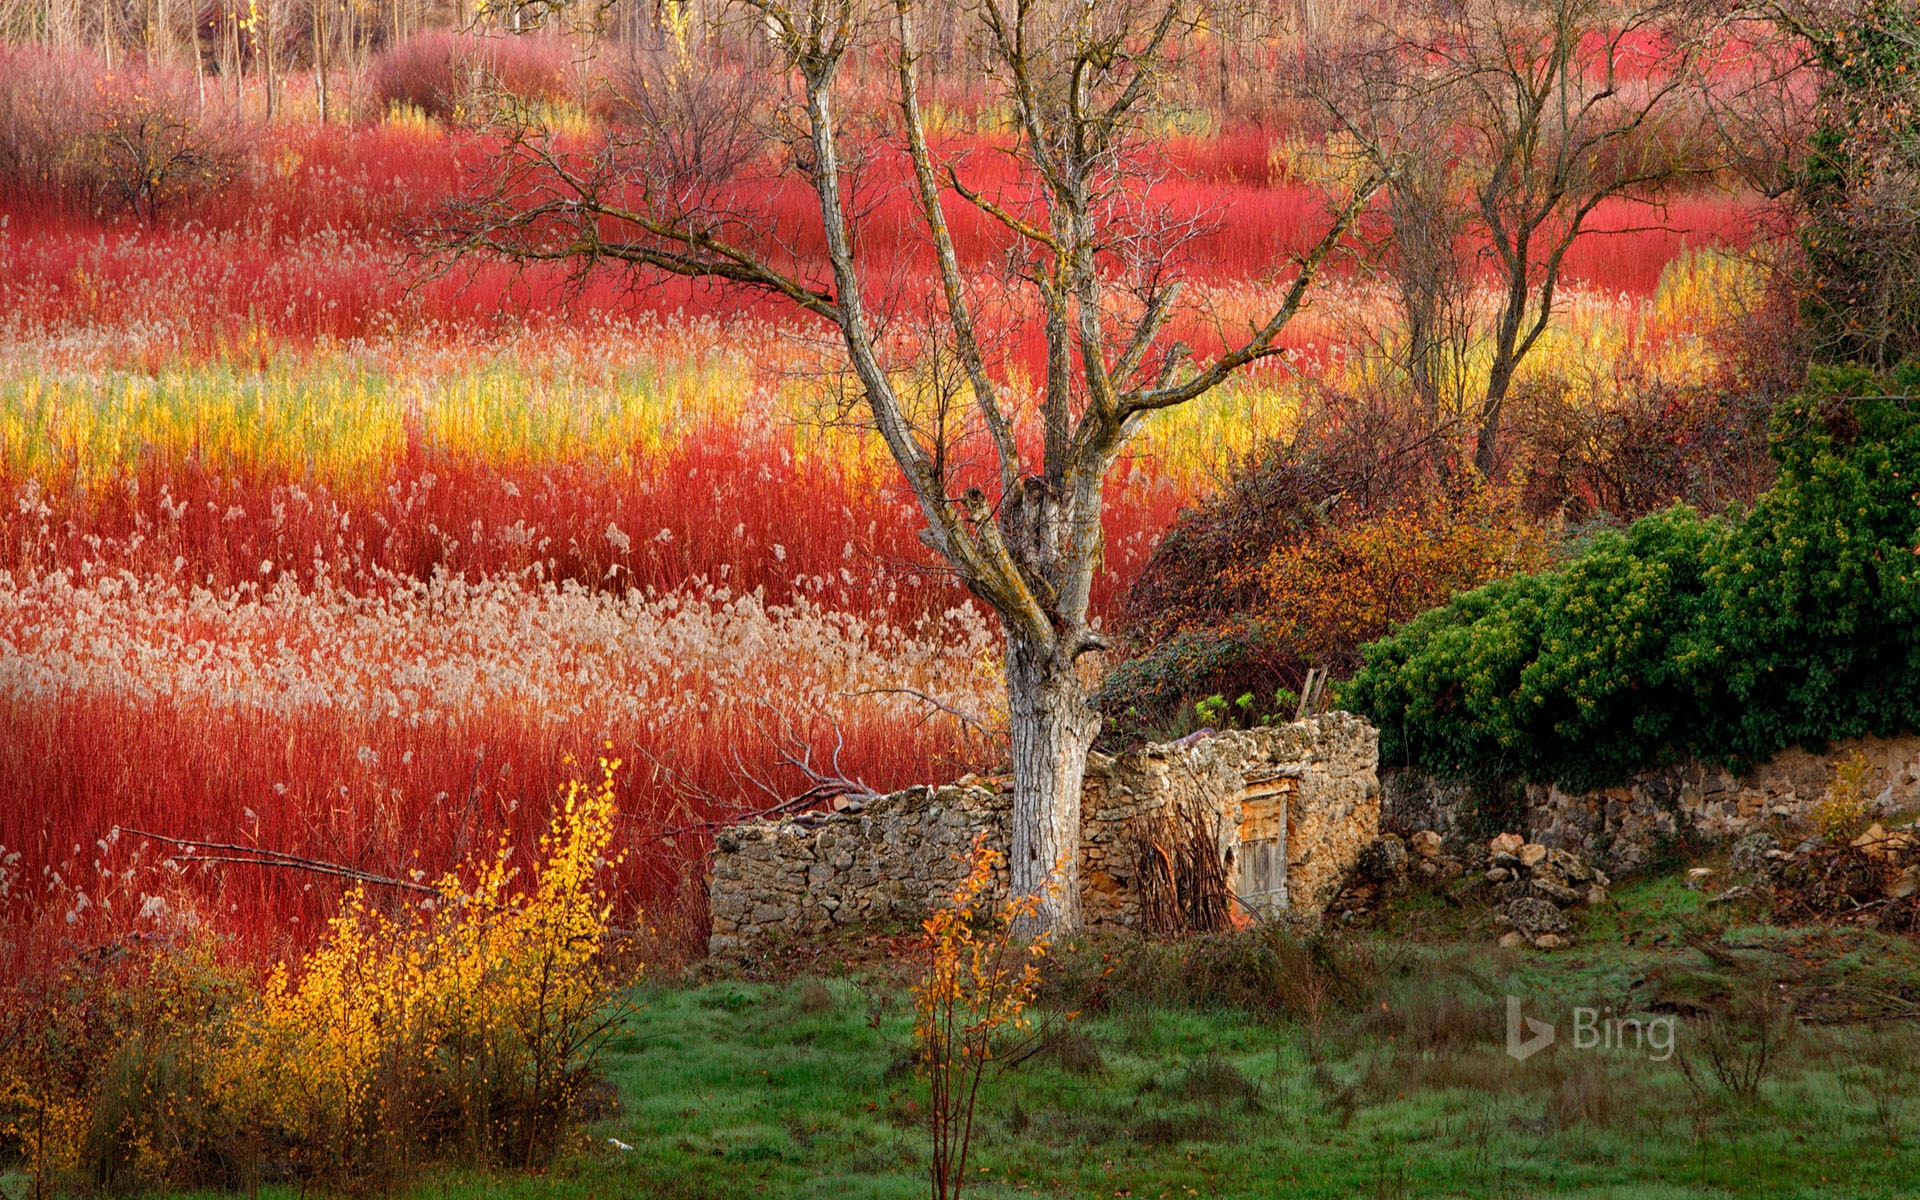 Wicker fields near Cuenca, Spain